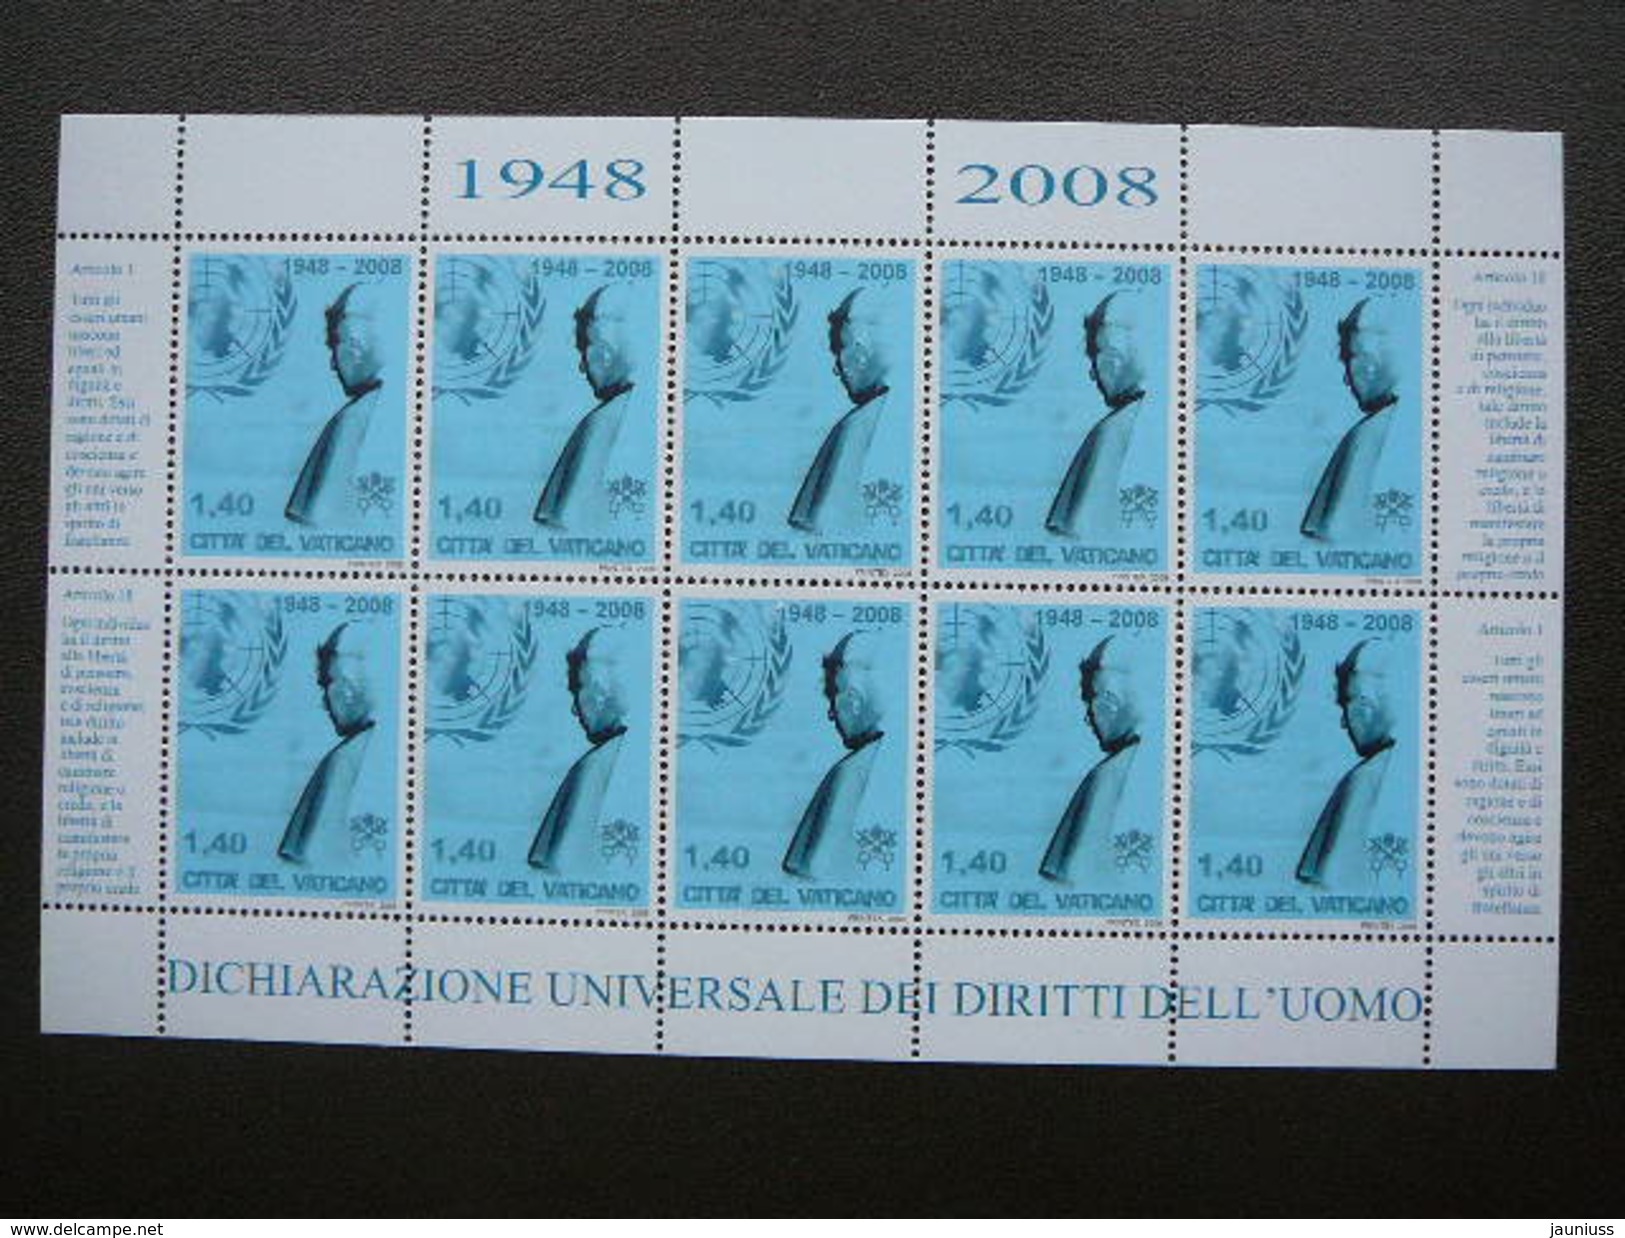 Pope Benedict XVI, UNO # Vatican Vatikan Vaticano  MNH 2008 # Mi. 1613 Klb - Unused Stamps